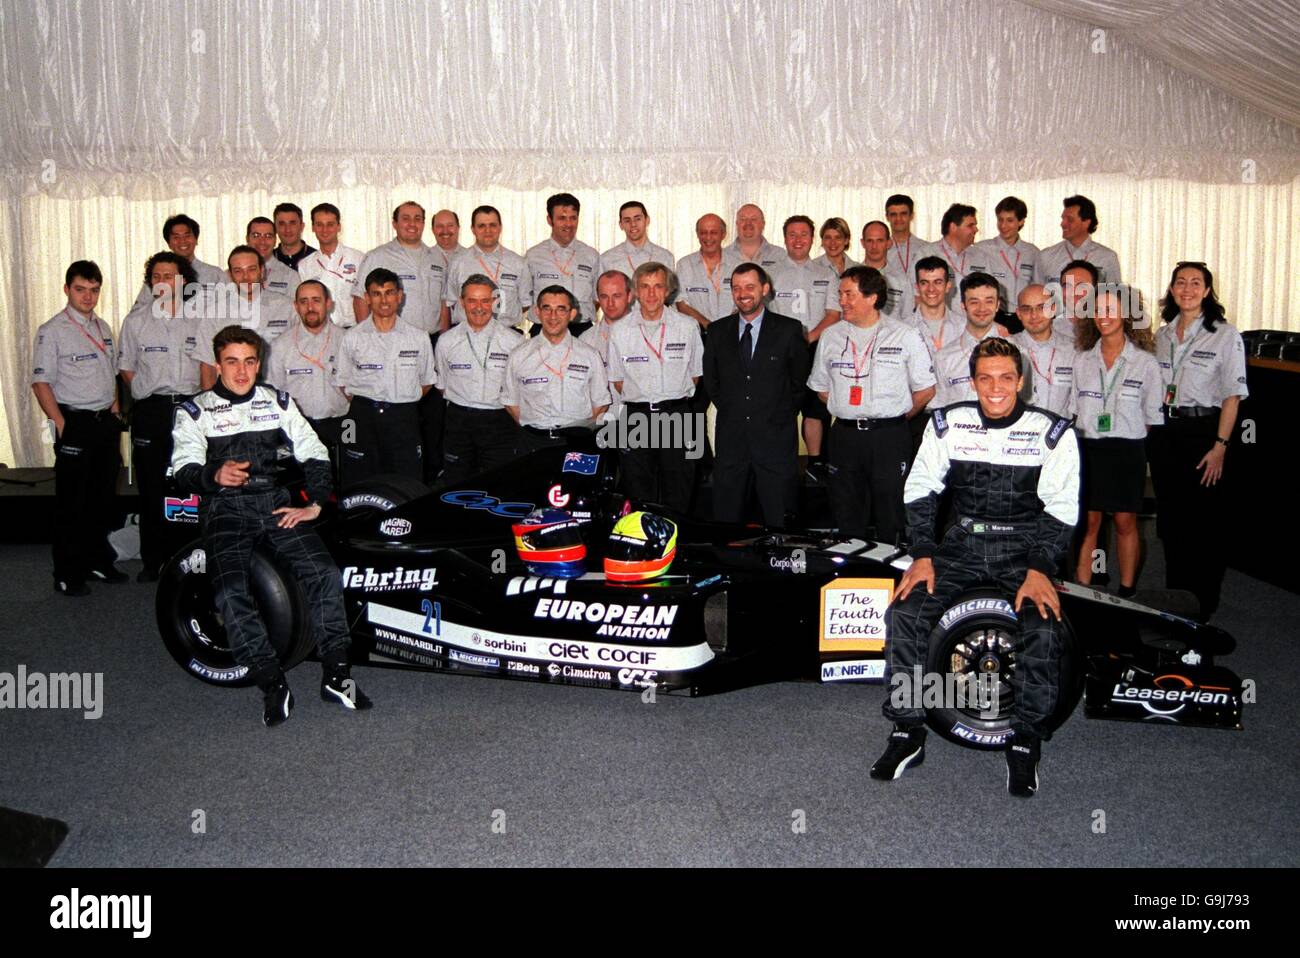 Course automobile Formula One - Grand Prix d'Australie - arrivée.Toute l'équipe de Minardi a l'air ravie d'avoir pu assister au premier Grand Prix de la saison Banque D'Images